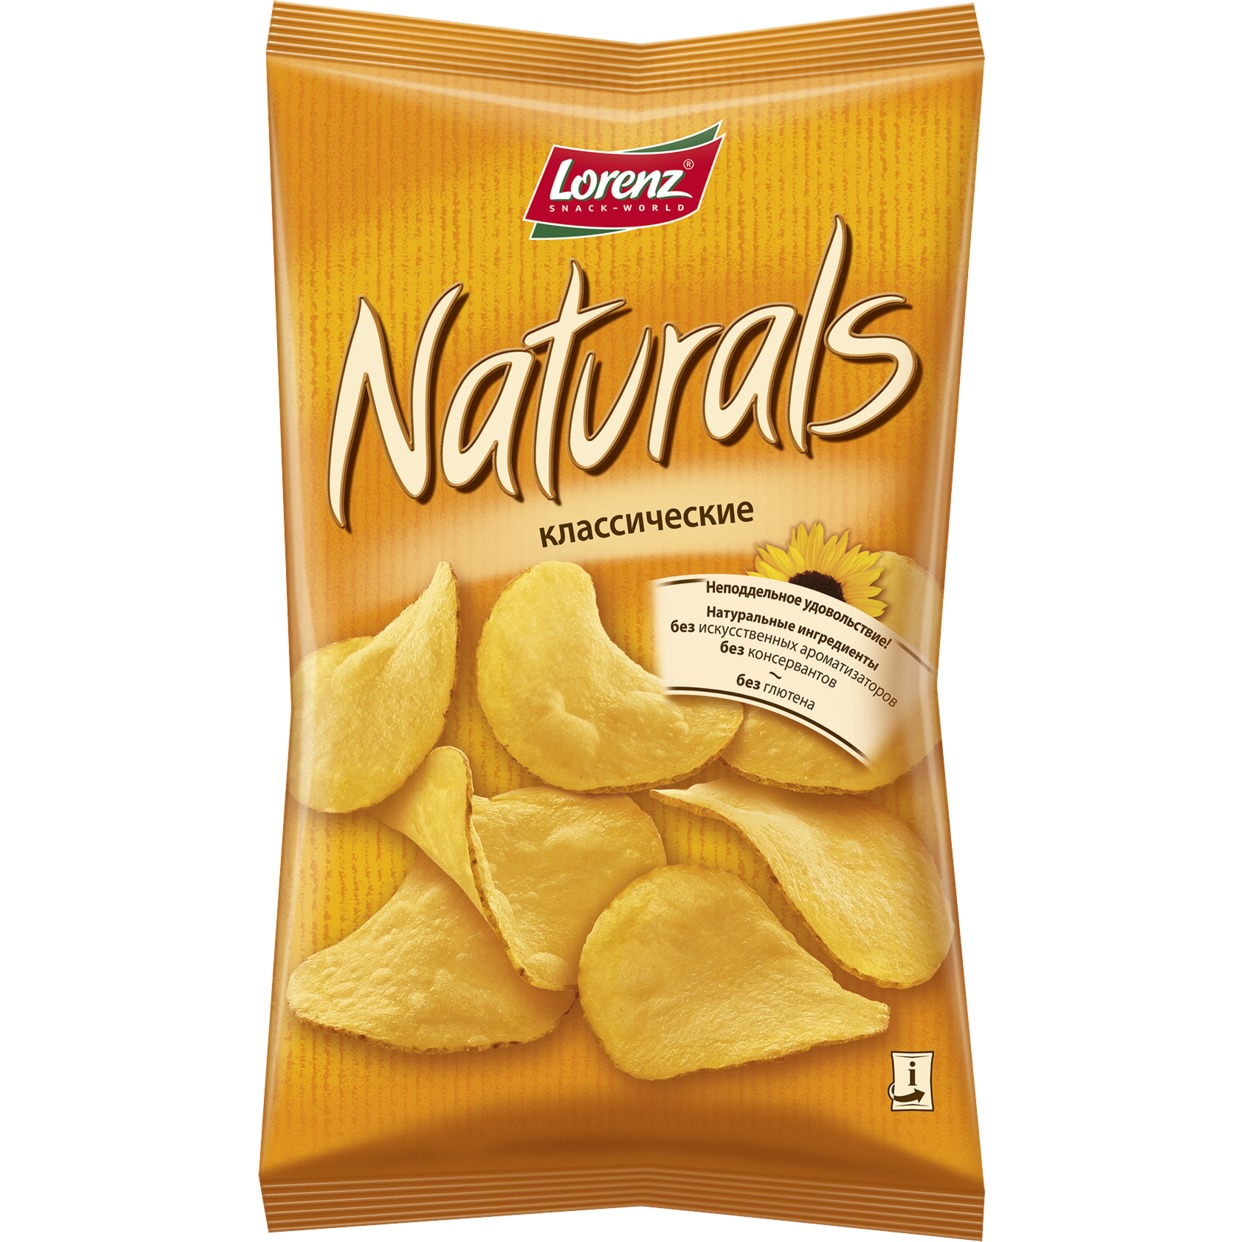 Картофельные чипсы “Naturals” классичекие, с солью, 100 гр по акции в Пятерочке